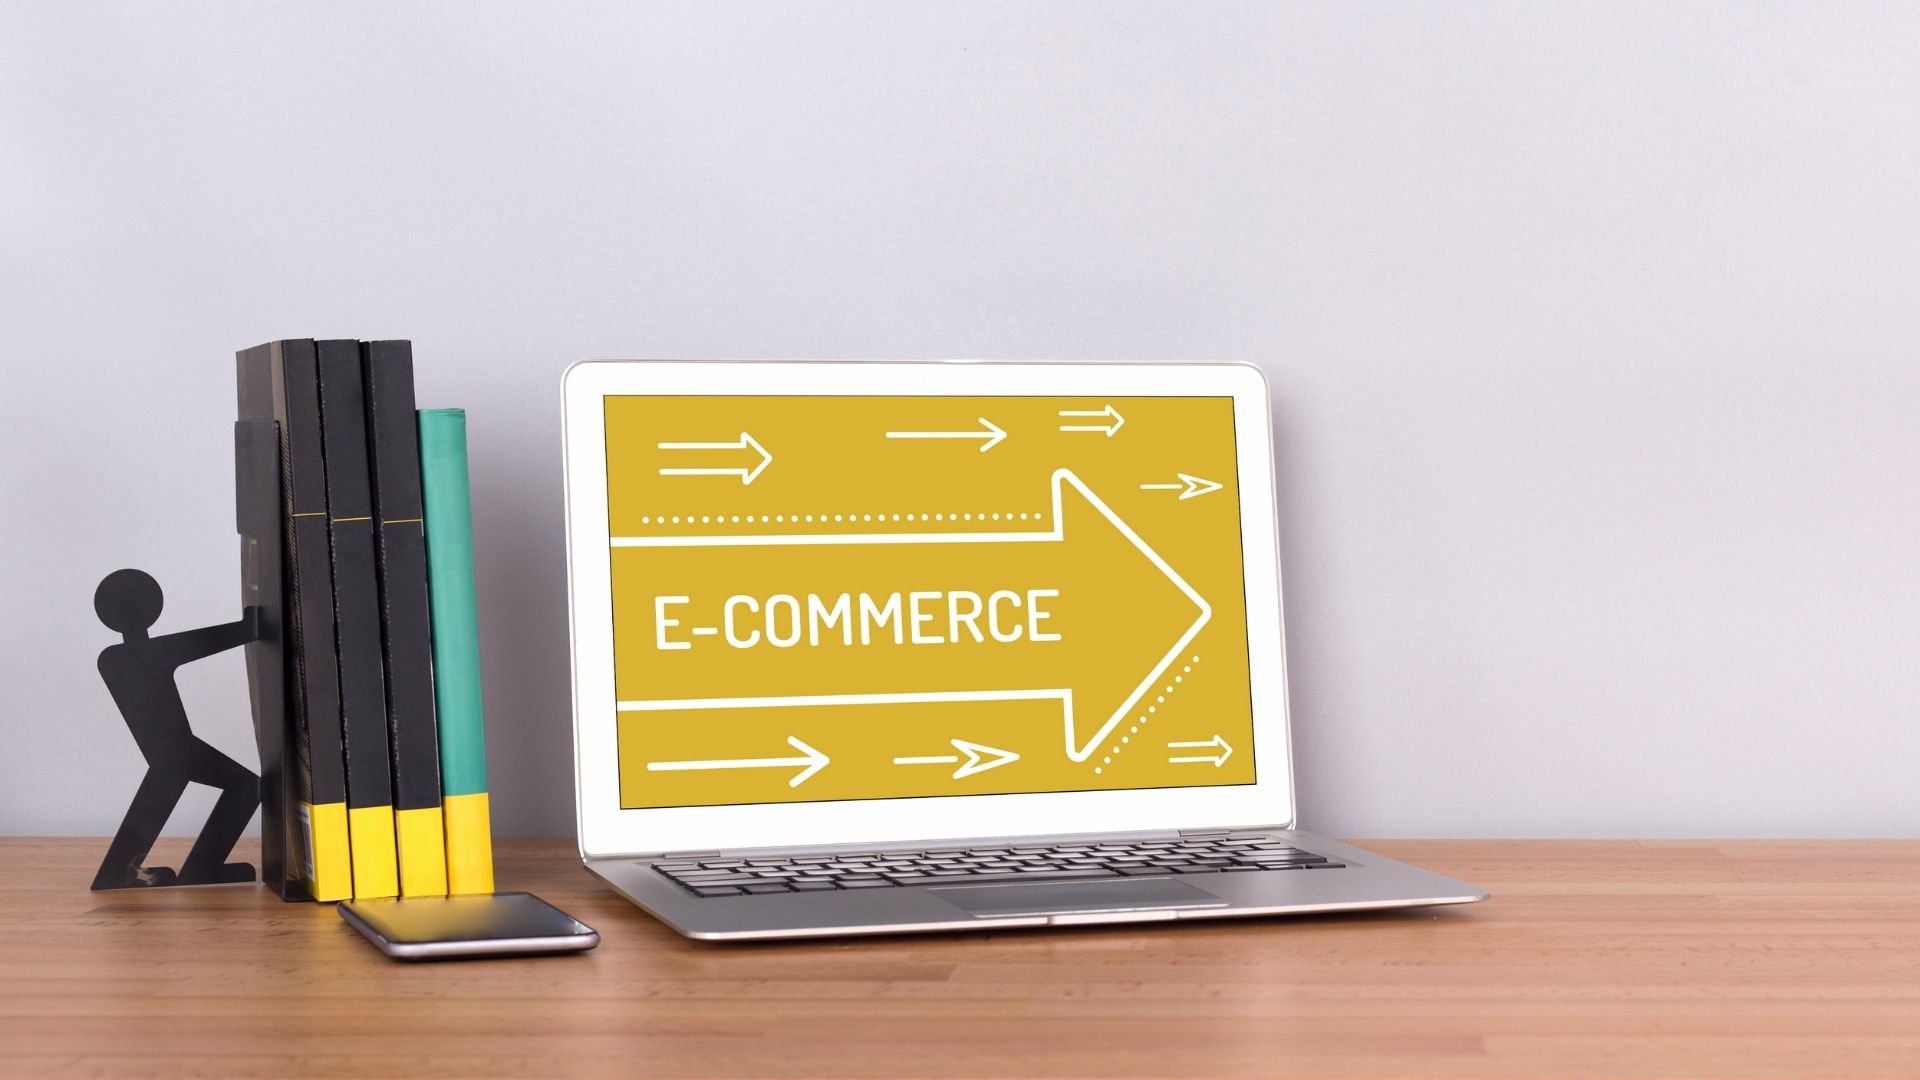 Realizzazione E-Commerce: 5 passi per iniziare